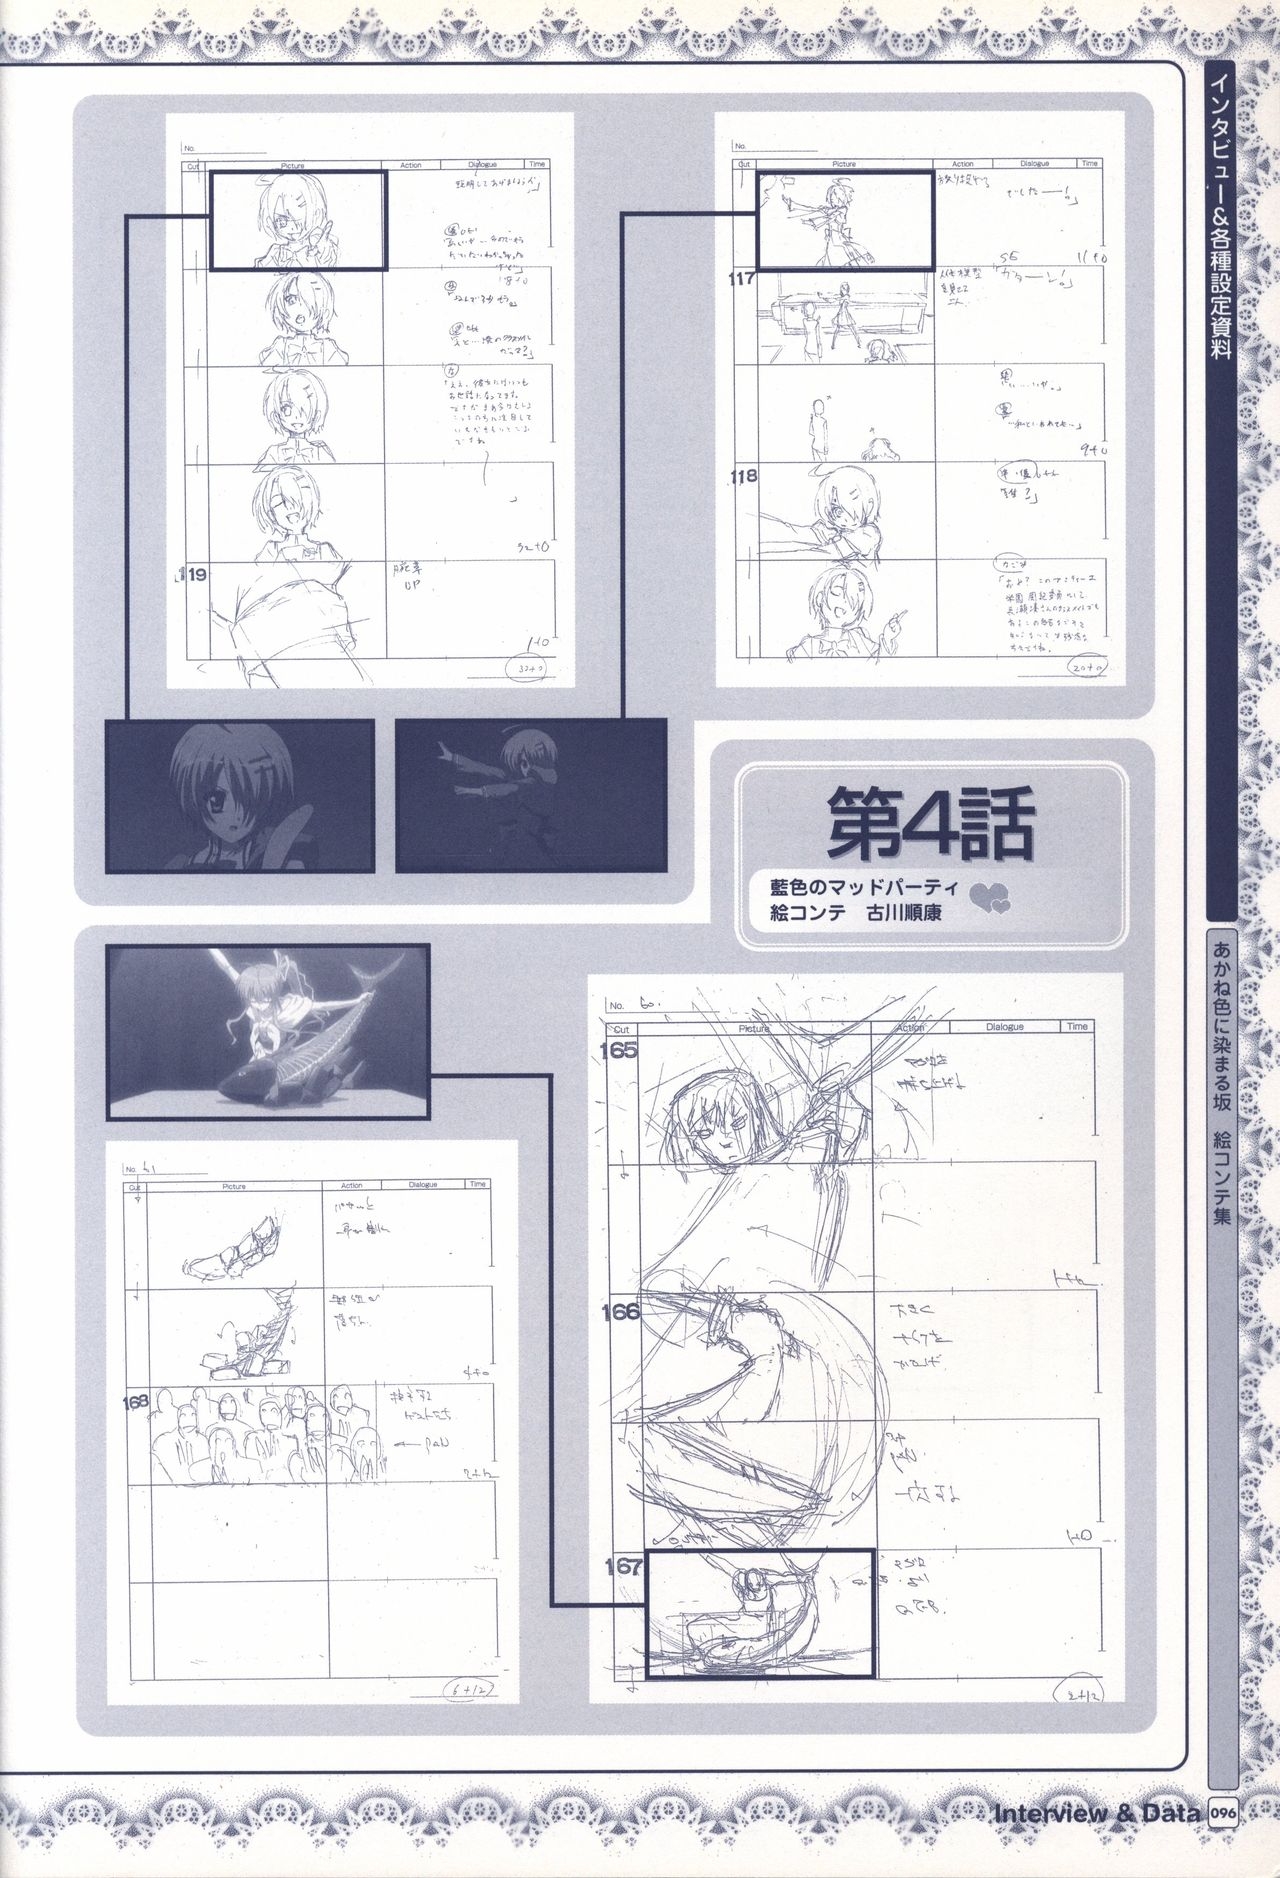 TV ANIME Akaneiro ni Somaru Saka Visual Guide Book 96